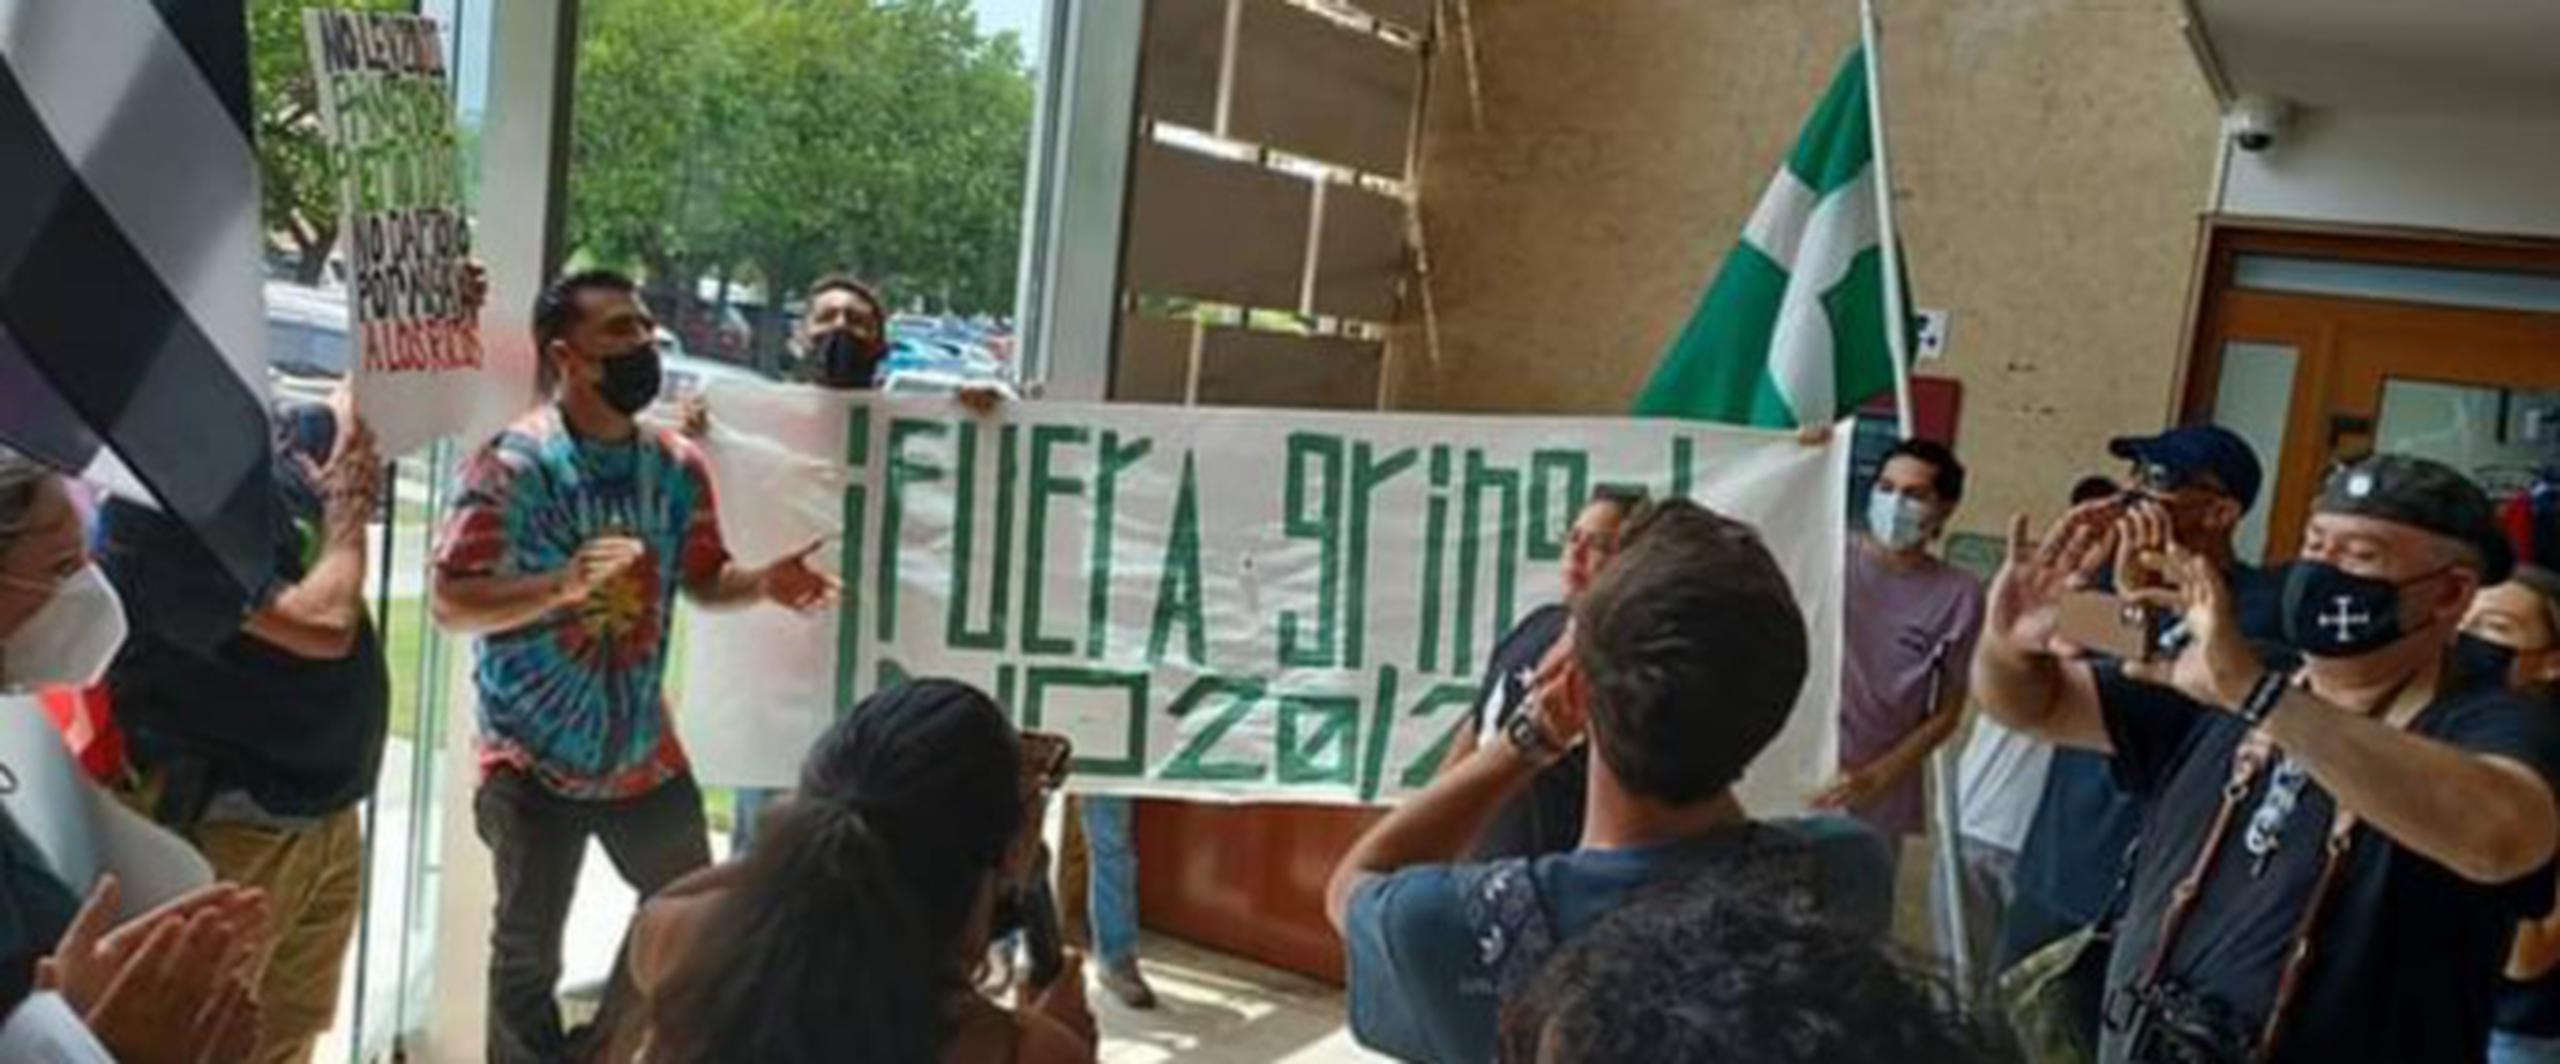 La juventud del Partido Independentista Puertorriqueño junto a otras organizaciones protestaron en el edificio donde se llevaban a cabo vistas públicas. (Facebook/ Jornada se Acabaron las Promesas).